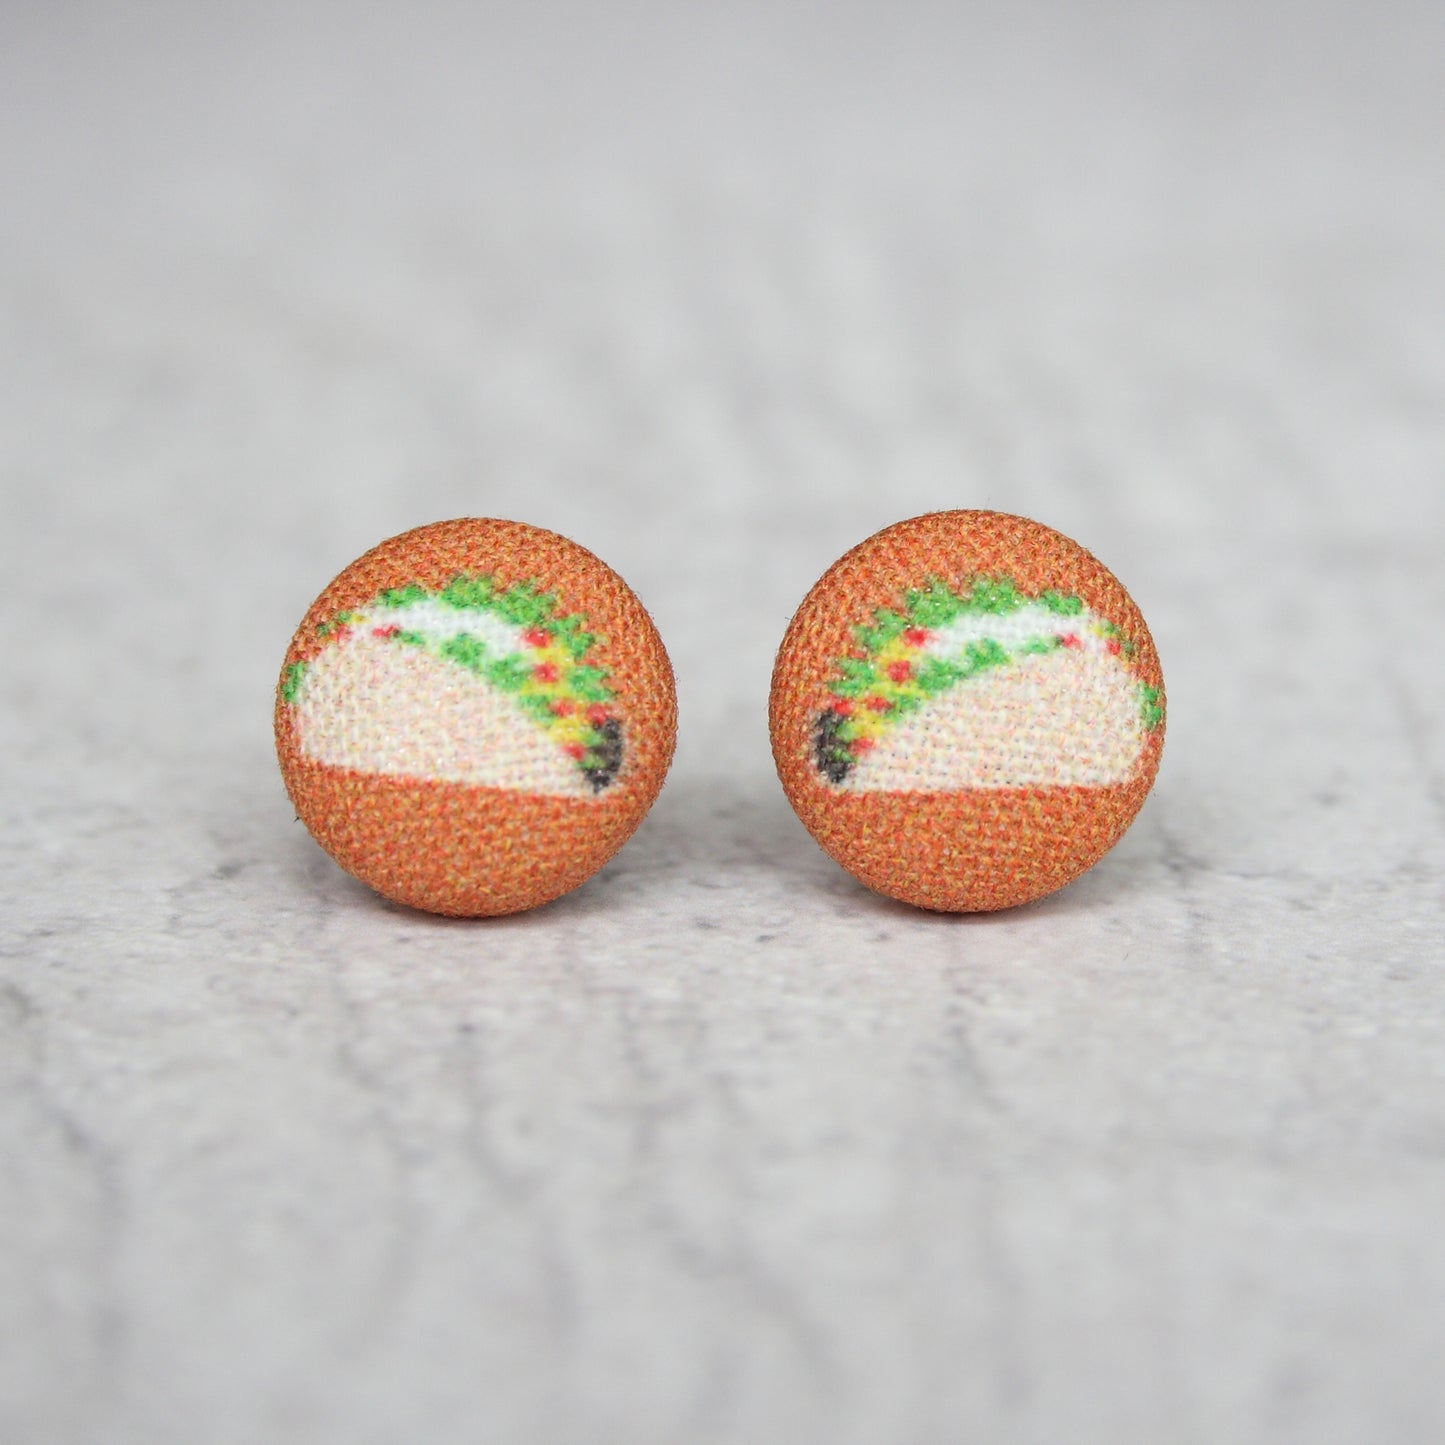 Rachel O's Taco Fabric Button Earrings